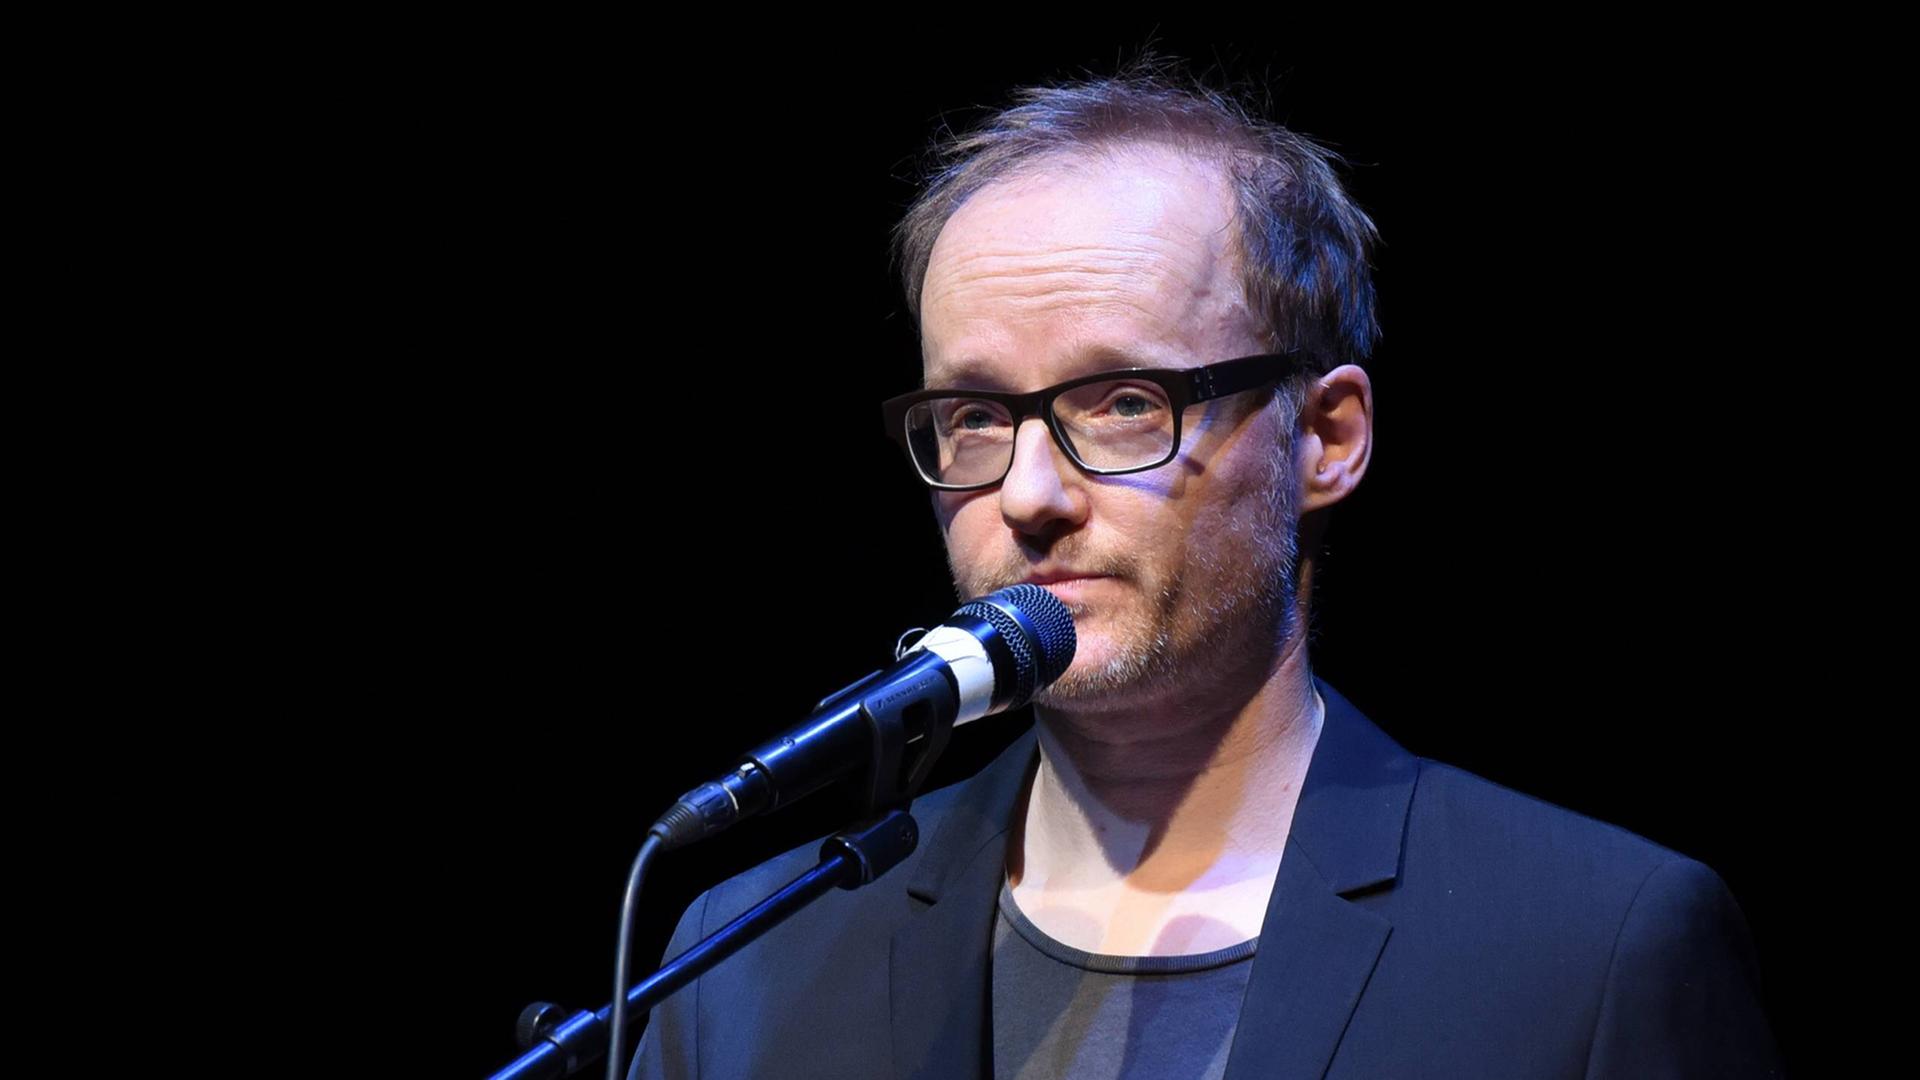 Der Indie-Pop-Musiker und Autor PeterLicht liest am 19.03.2015 im Rahmen des internationalen Literaturfestivals Lit.Cologne in Köln.